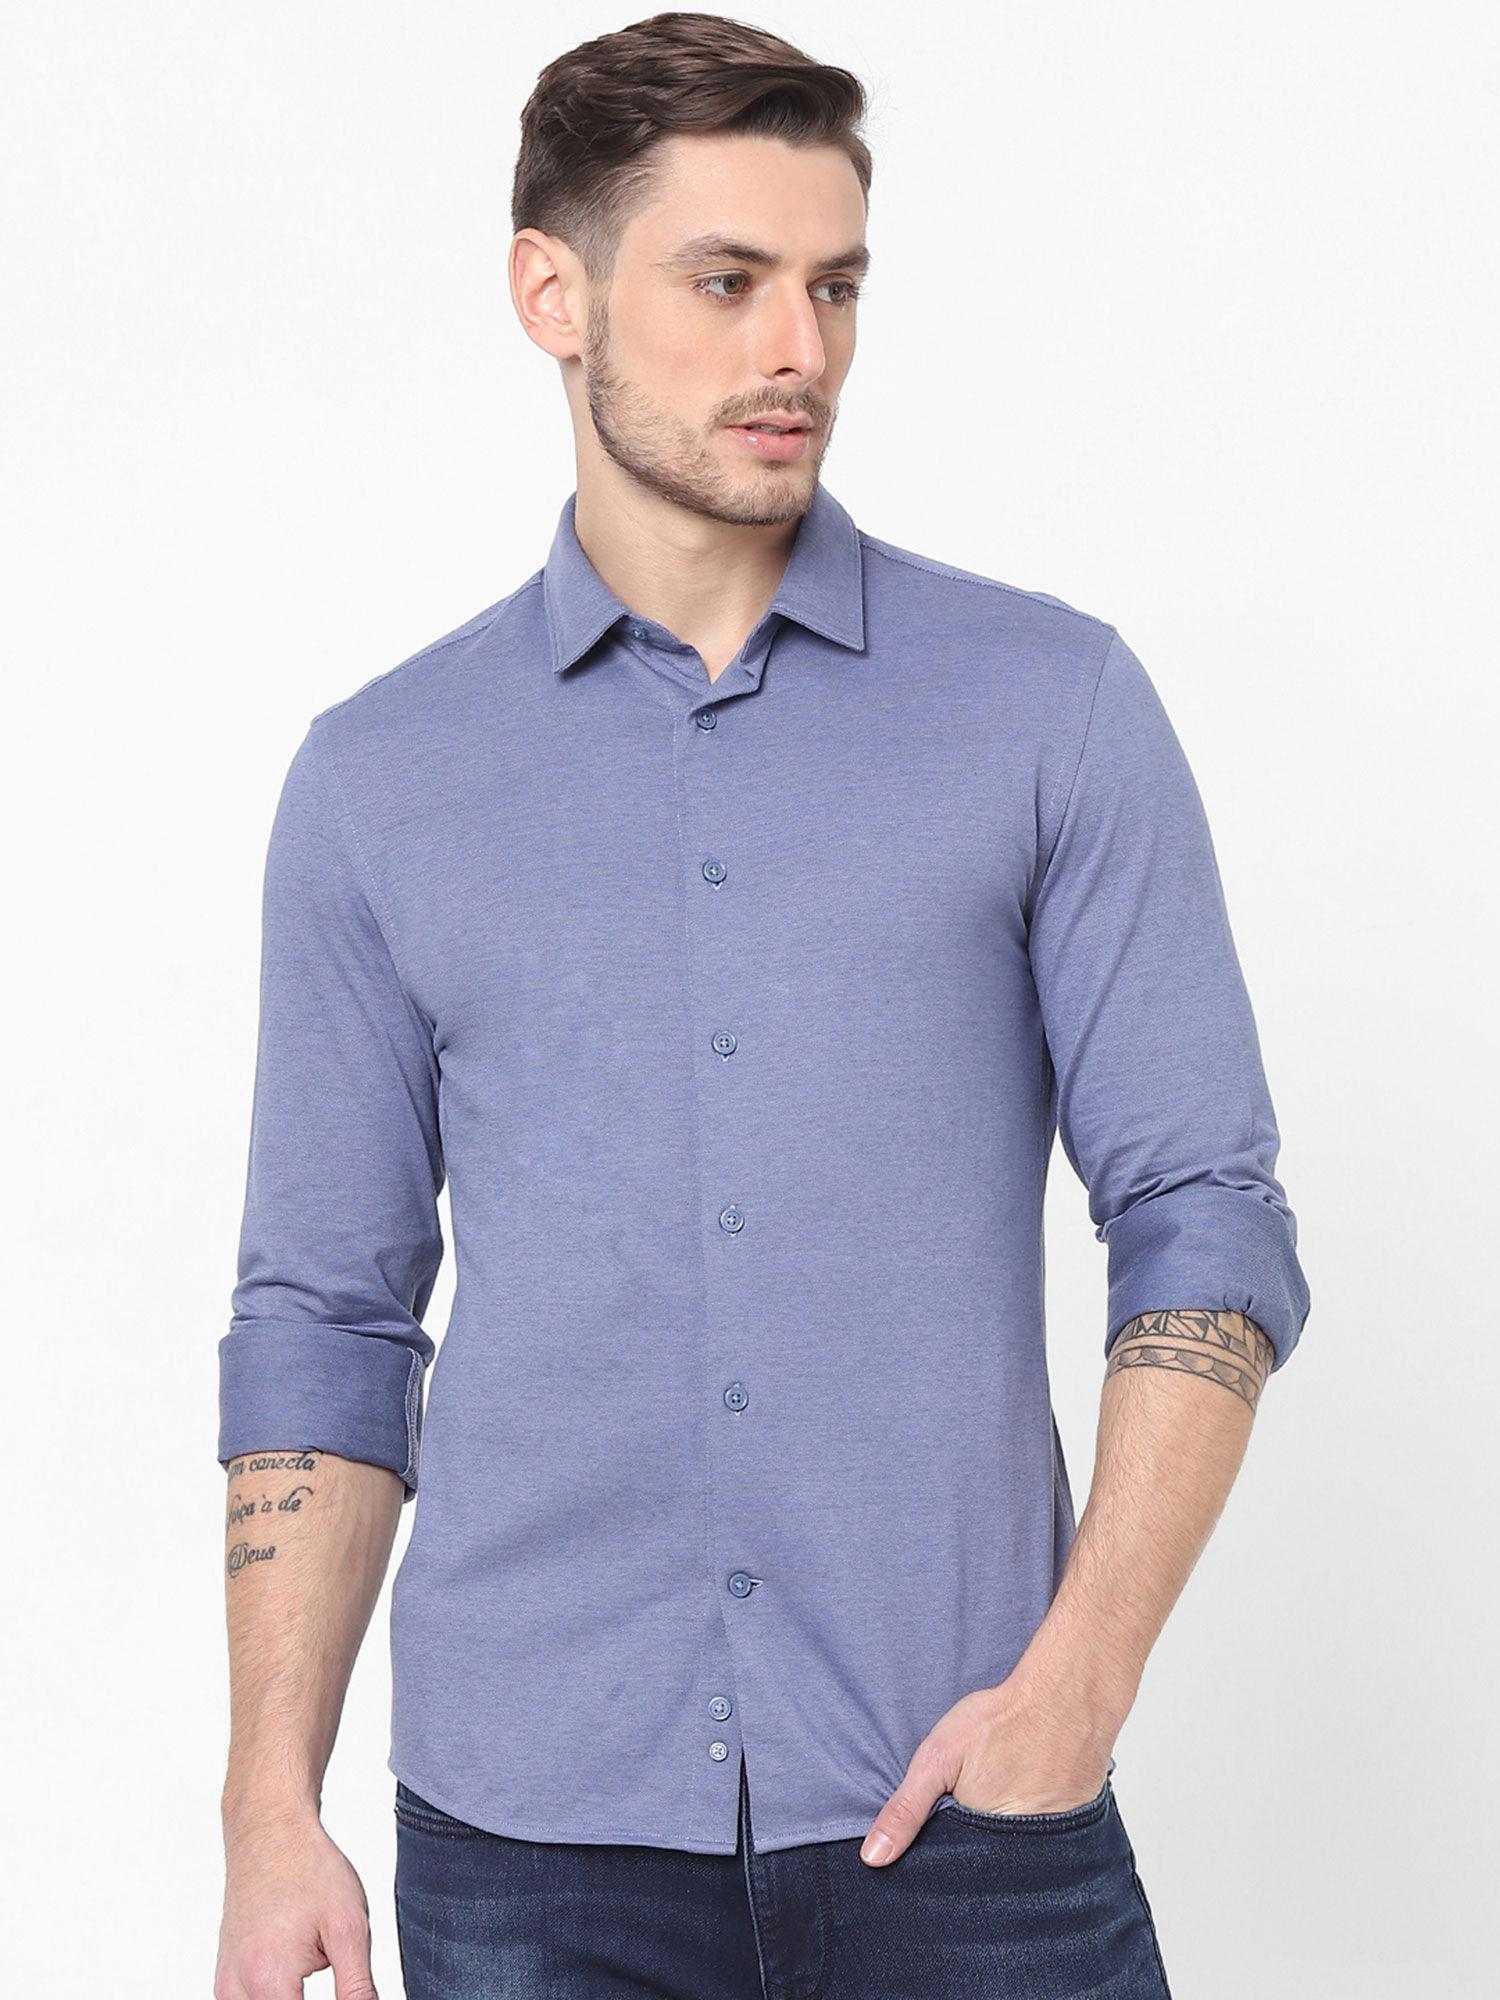 light blue full sleeved shirt